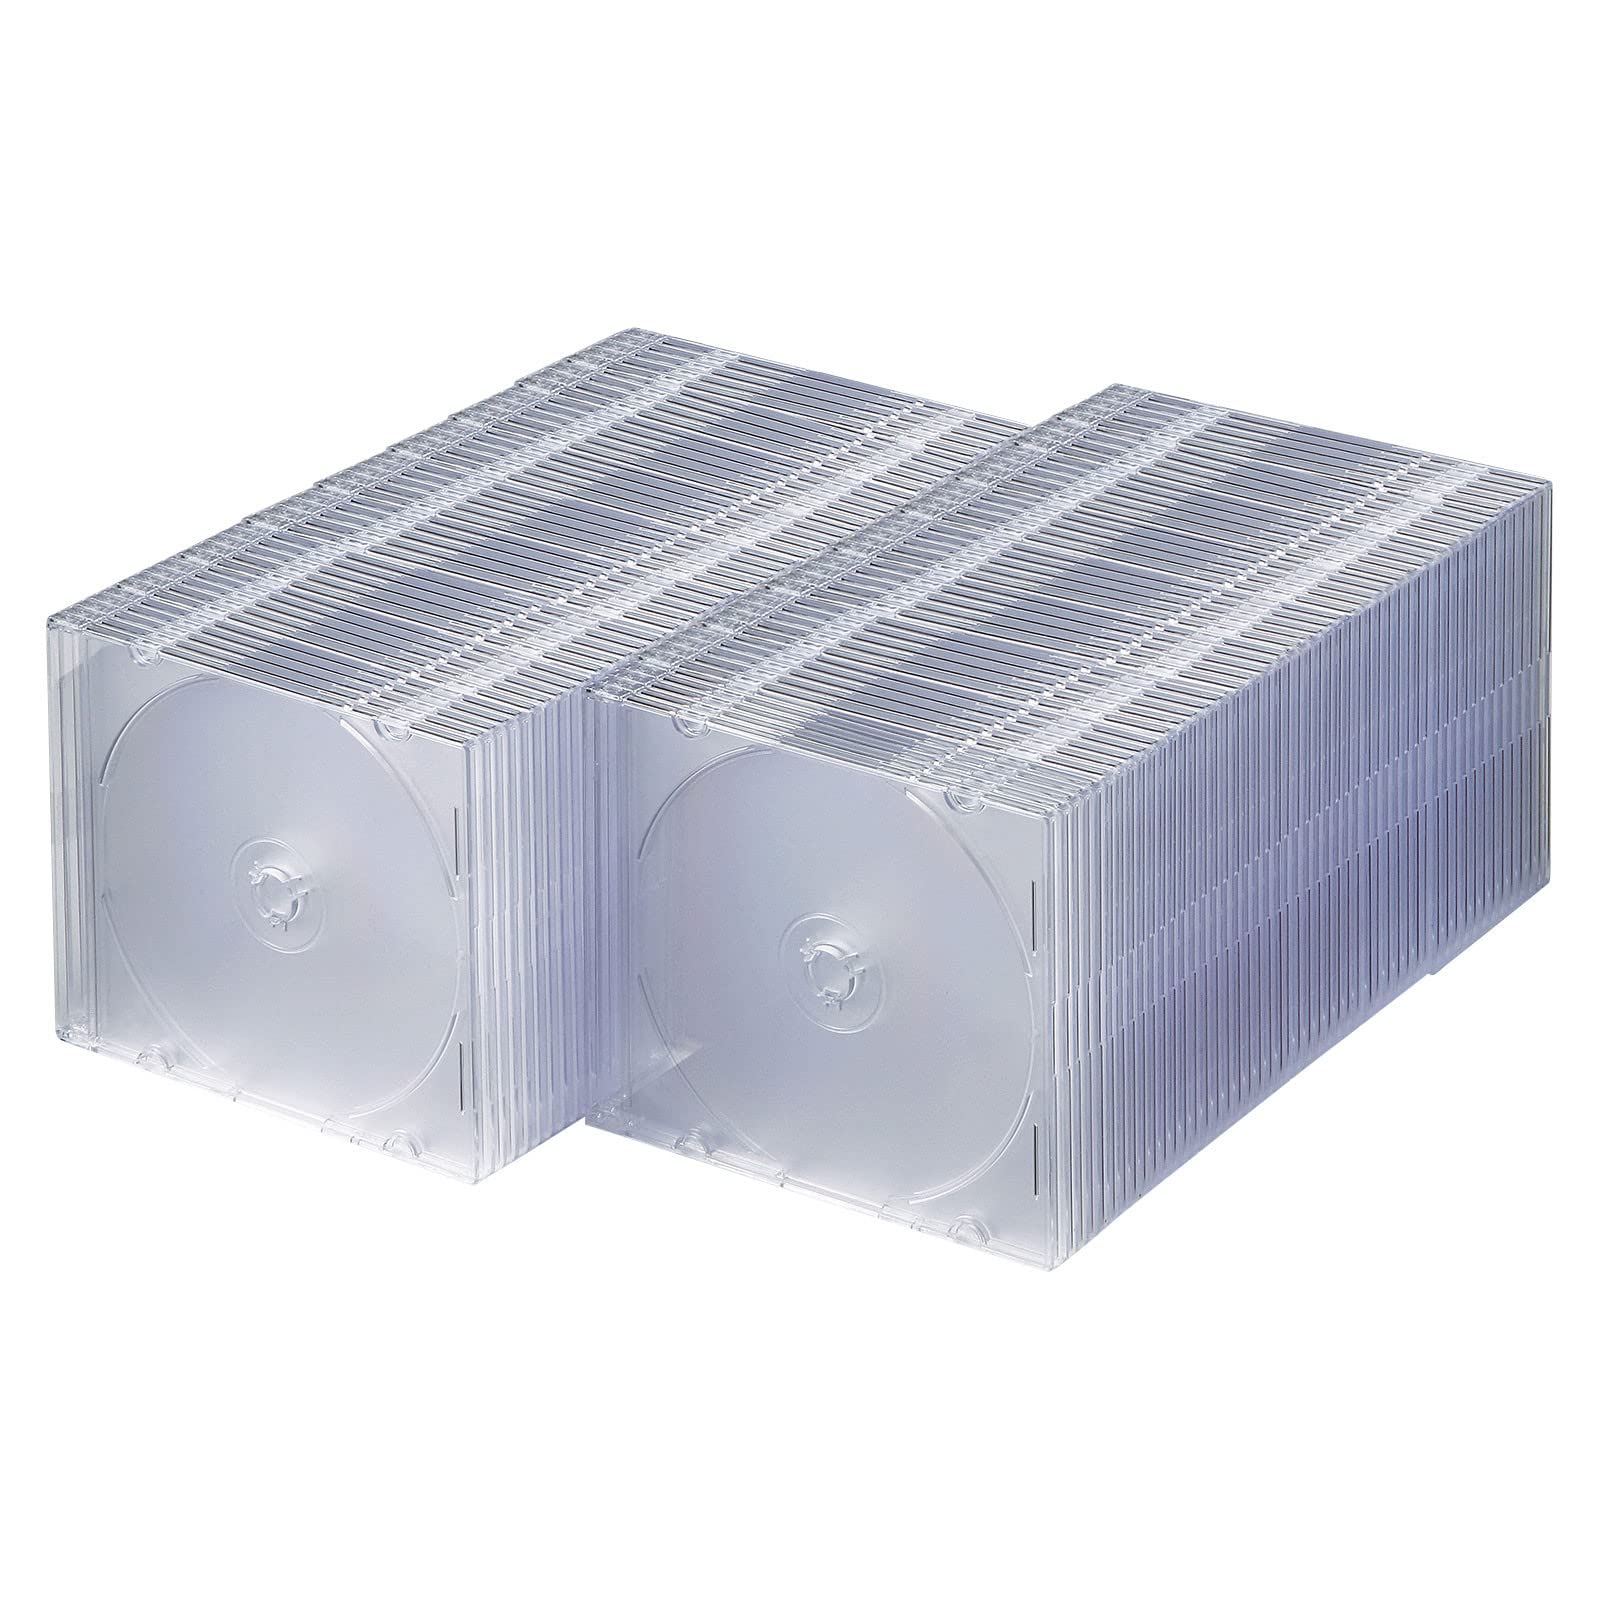 商品情報商品の説明説明 ●薄さ約5mmと従来のCDケースの約半分なので省スペースにCDを収納できます。 ●100％バージンPS樹脂材を使用しており臭いが少なく耐久性も高い高品質なプラケースです。 ●DVD、CDはもちろんブルーレイディスクの保管にも最適です。 ■カラー：クリア ■サイズ：W142×D5.2×H124.5mm ■重量：38g ■材質：PS（ポリスチレン）樹脂 ■ディスク収納枚数：1枚 ■入数：100枚セット主な仕様 薄さ約5mmと従来のCDケースの約半分なので省スペースにCDを収納できます。br100％バージンPS樹脂材を使用しており臭いが少なく耐久性も高い高品質なプラケースです。brDVD、CDはもちろんブルーレイメディアの保管にも最適です。